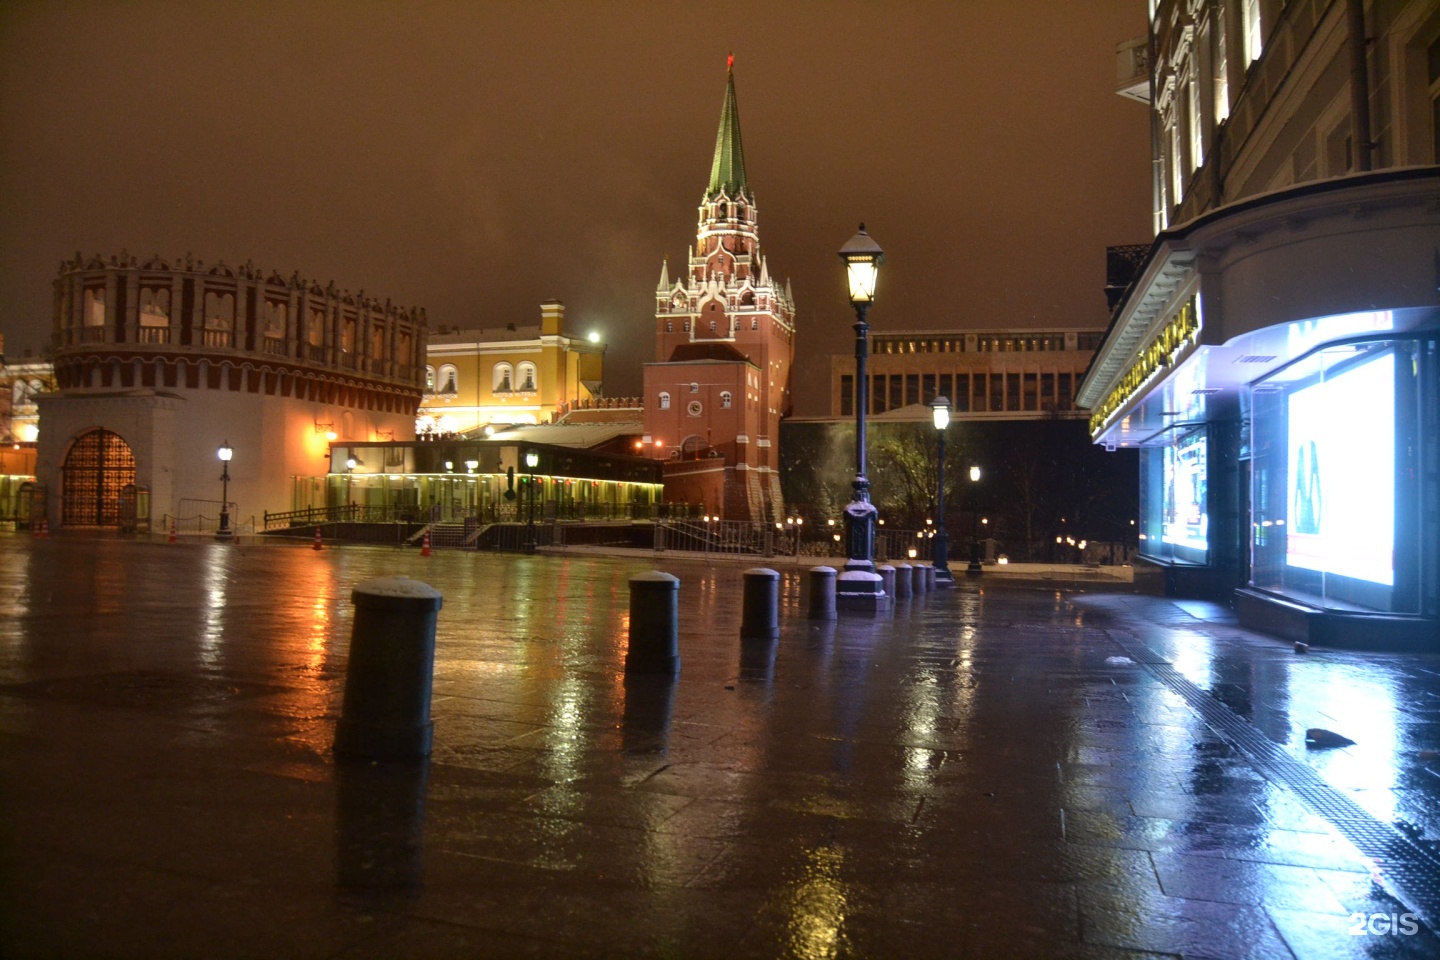 вход в кремлевский дворец на концерт